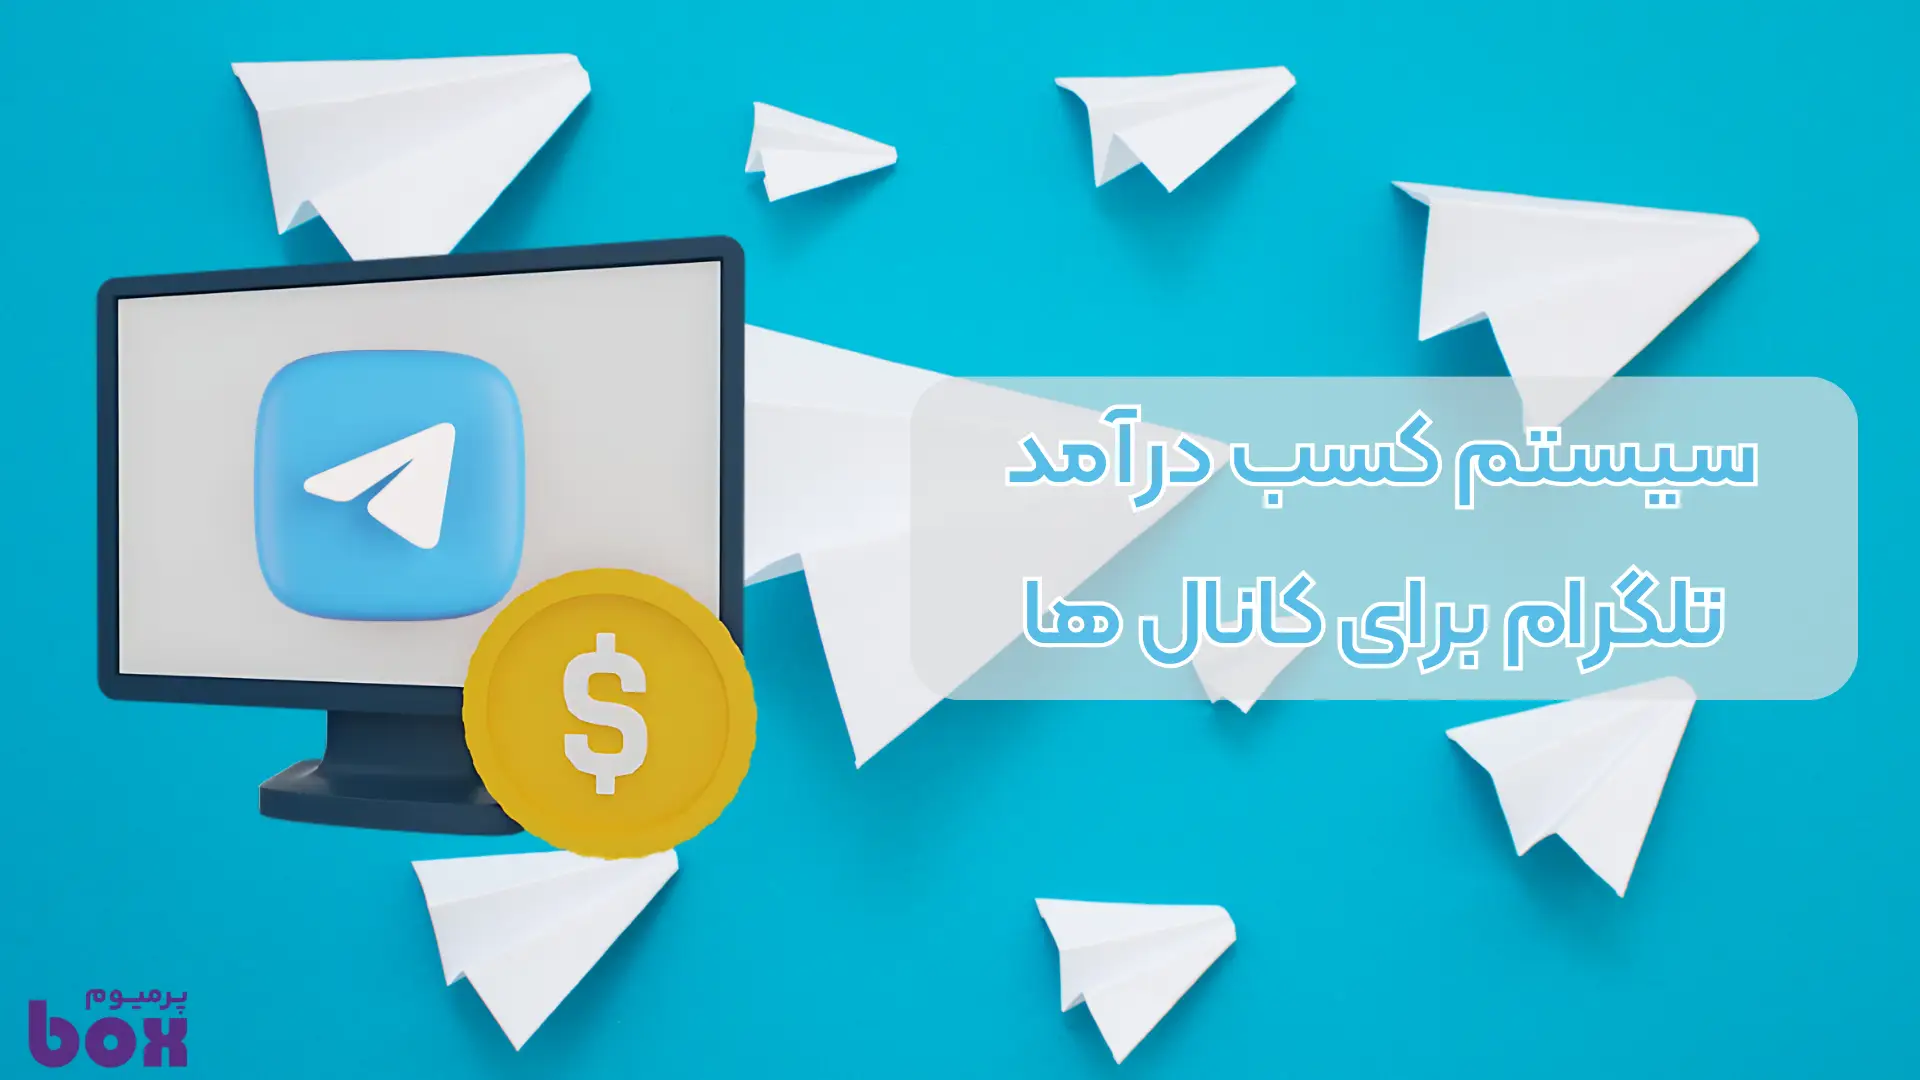 سیستم کسب درآمد تلگرام برای کانال های ایرانی فعال شد